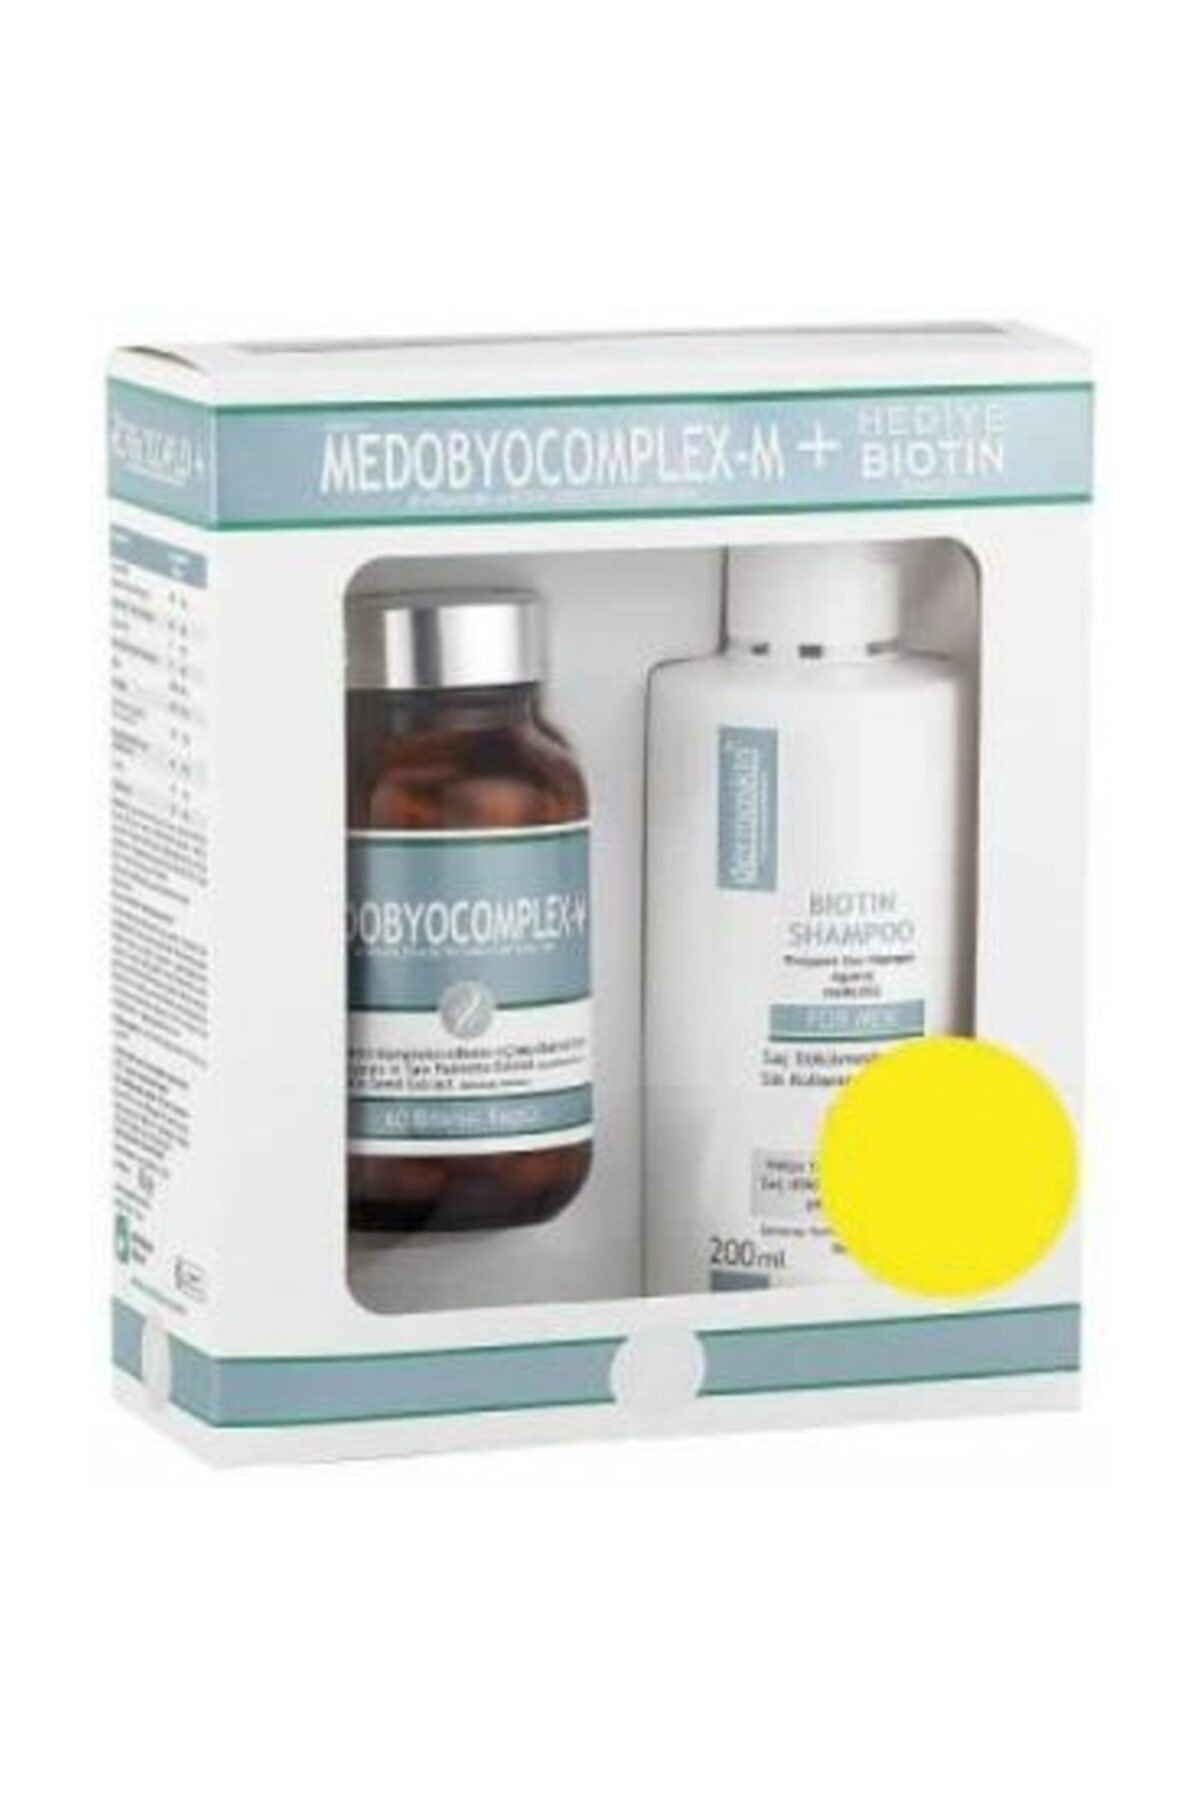 Dermoskin Medobyocomplex Erkek 60 Kapsül - Biotin Şampuan Hediyeli Paket